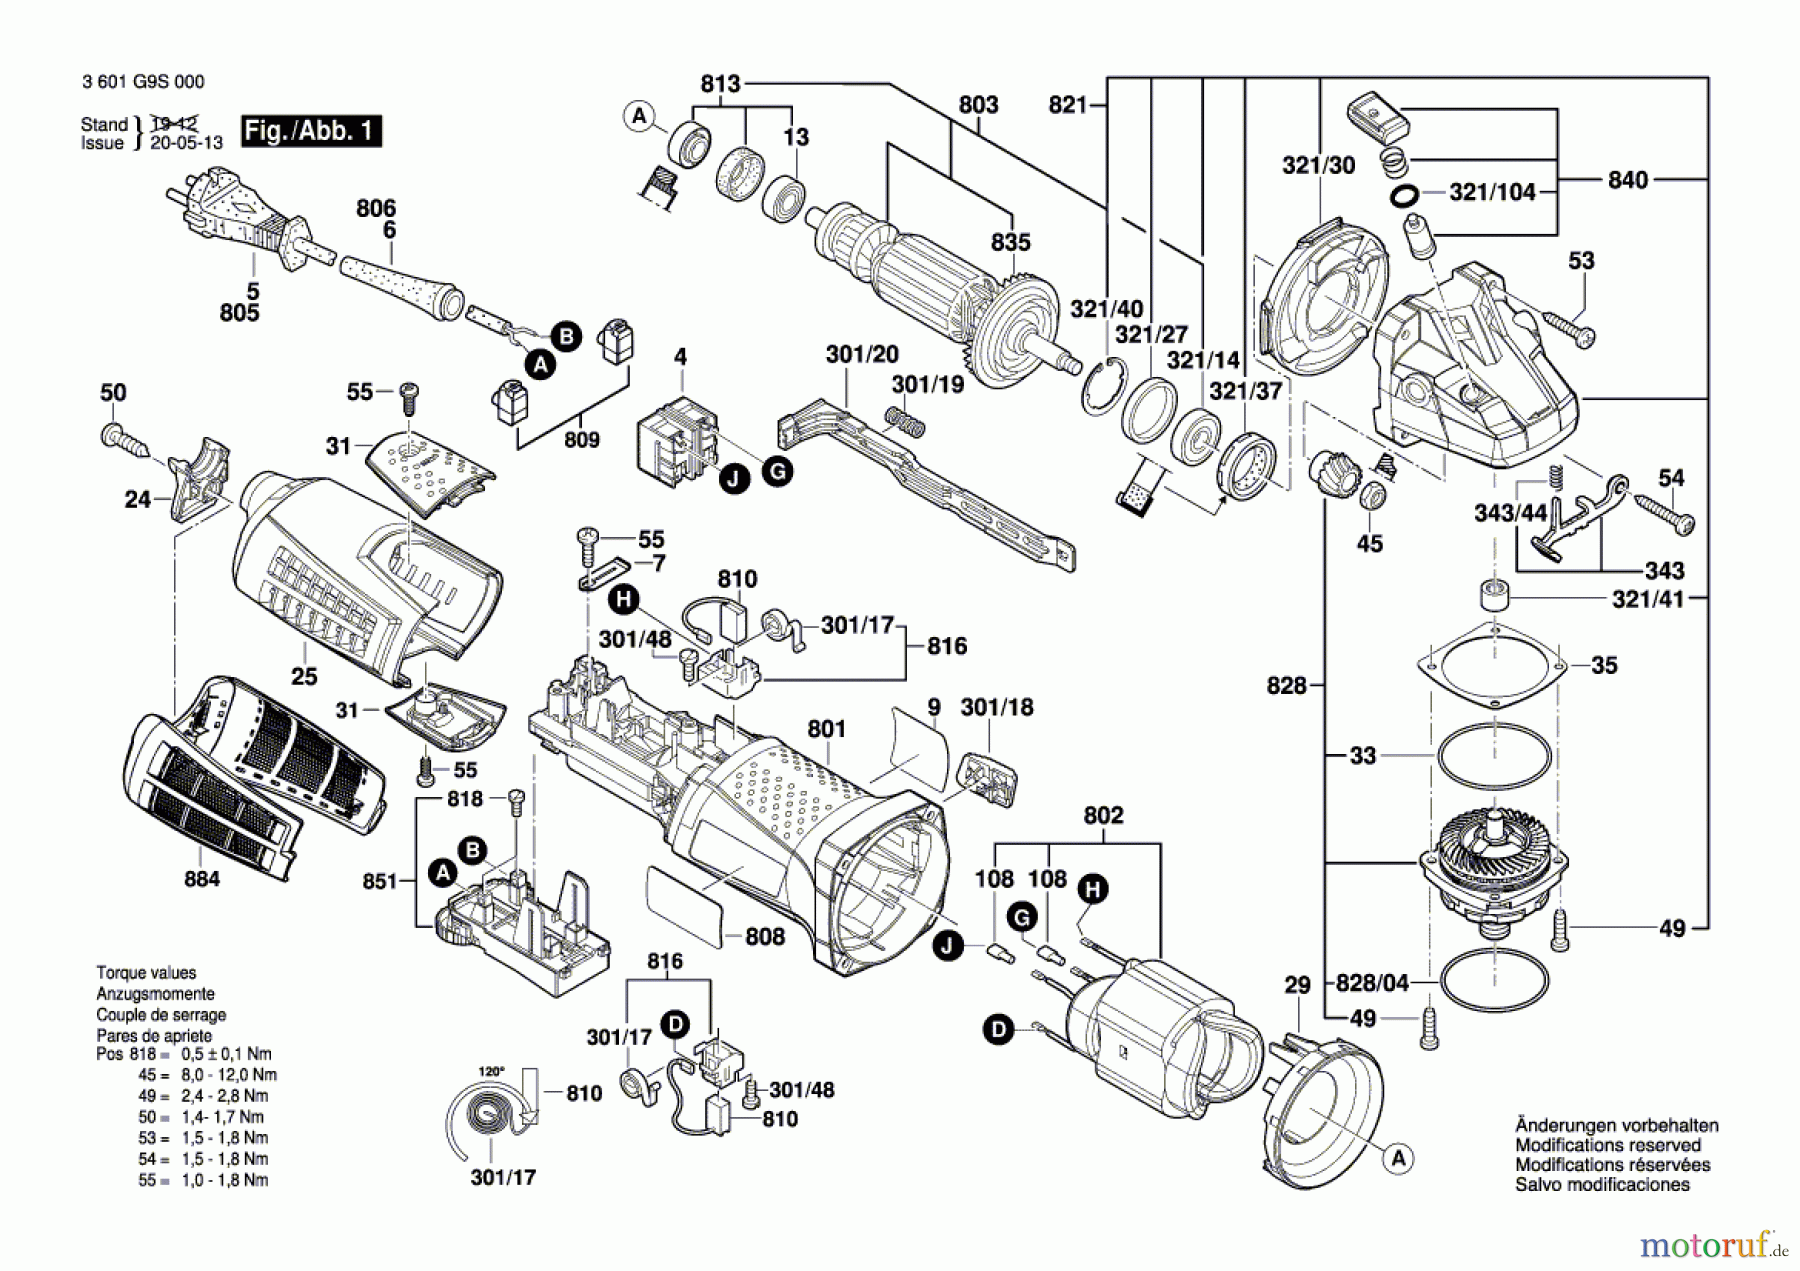  Bosch Werkzeug Winkelschleifer GWS 19-125 CIST Seite 1